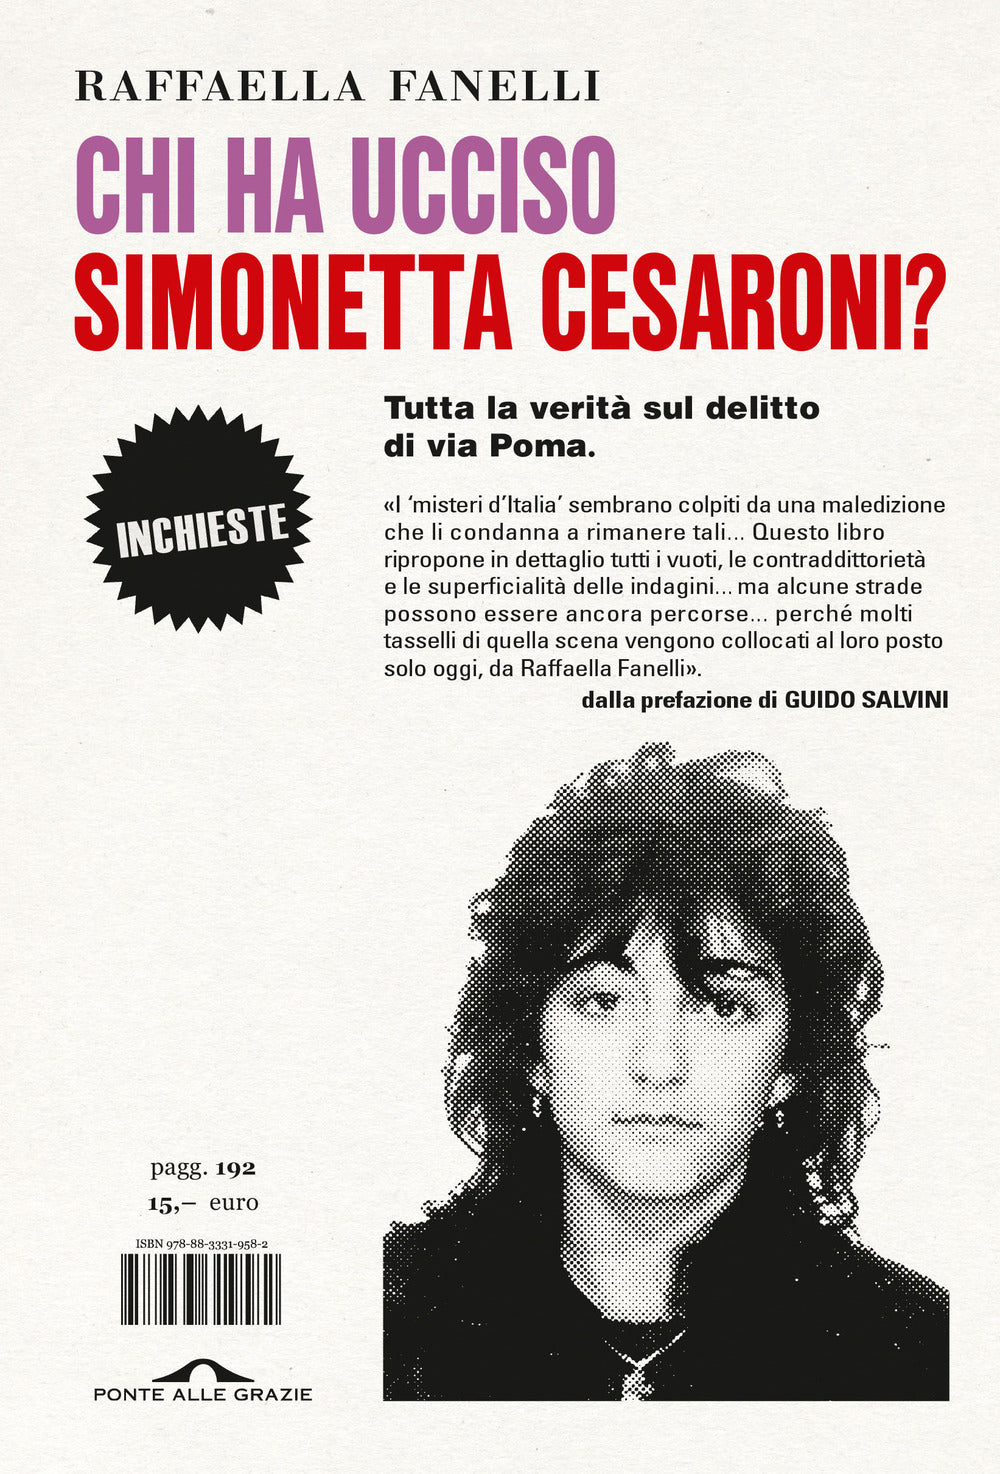 Chi ha ucciso Simonetta Cesaroni? Tutta la verità sul delitto di via Poma.